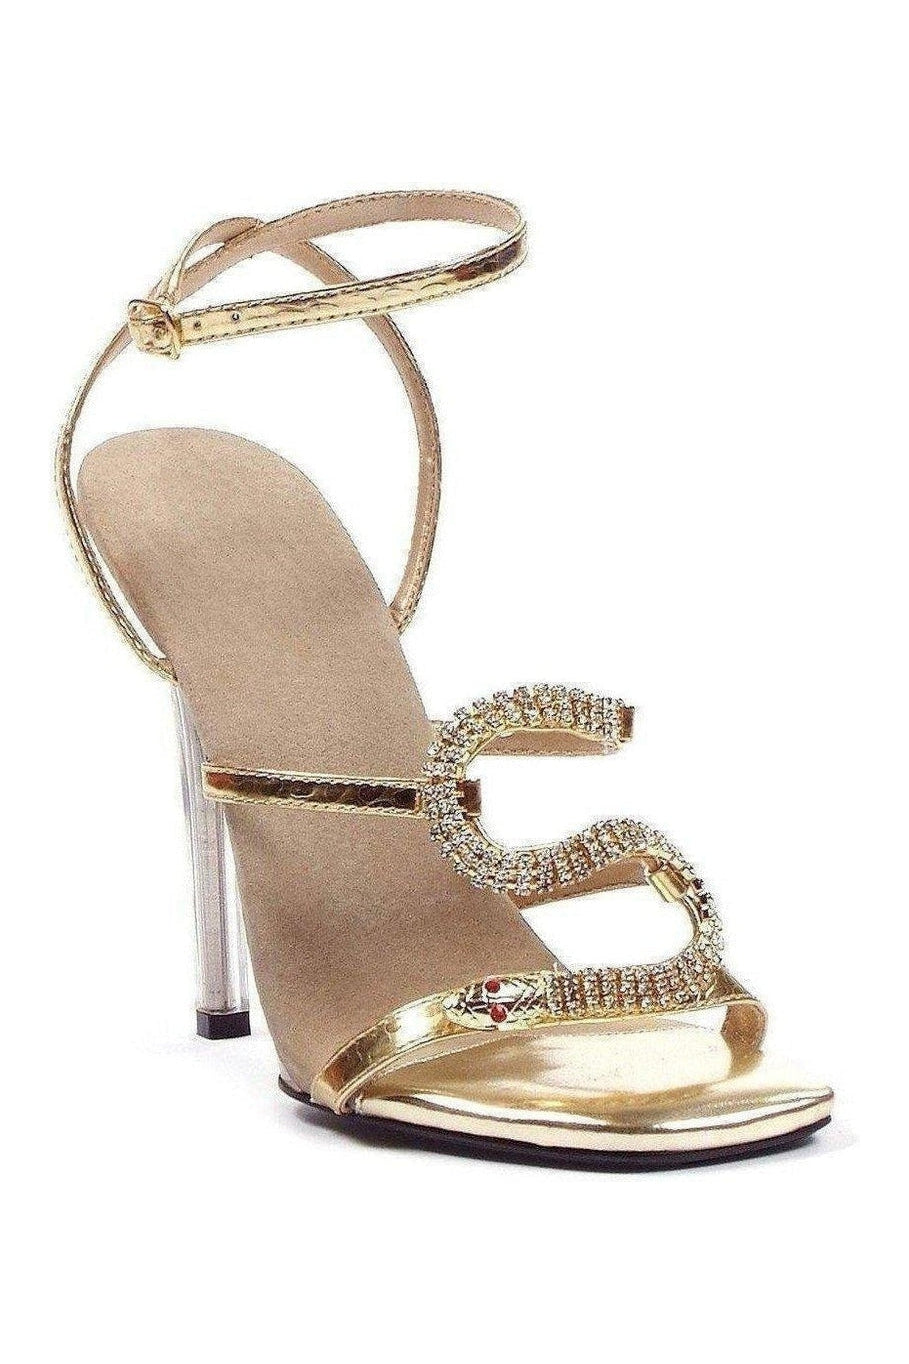 508-CHANTEL Sandal | Gold Faux Leather-Ellie Shoes-SEXYSHOES.COM